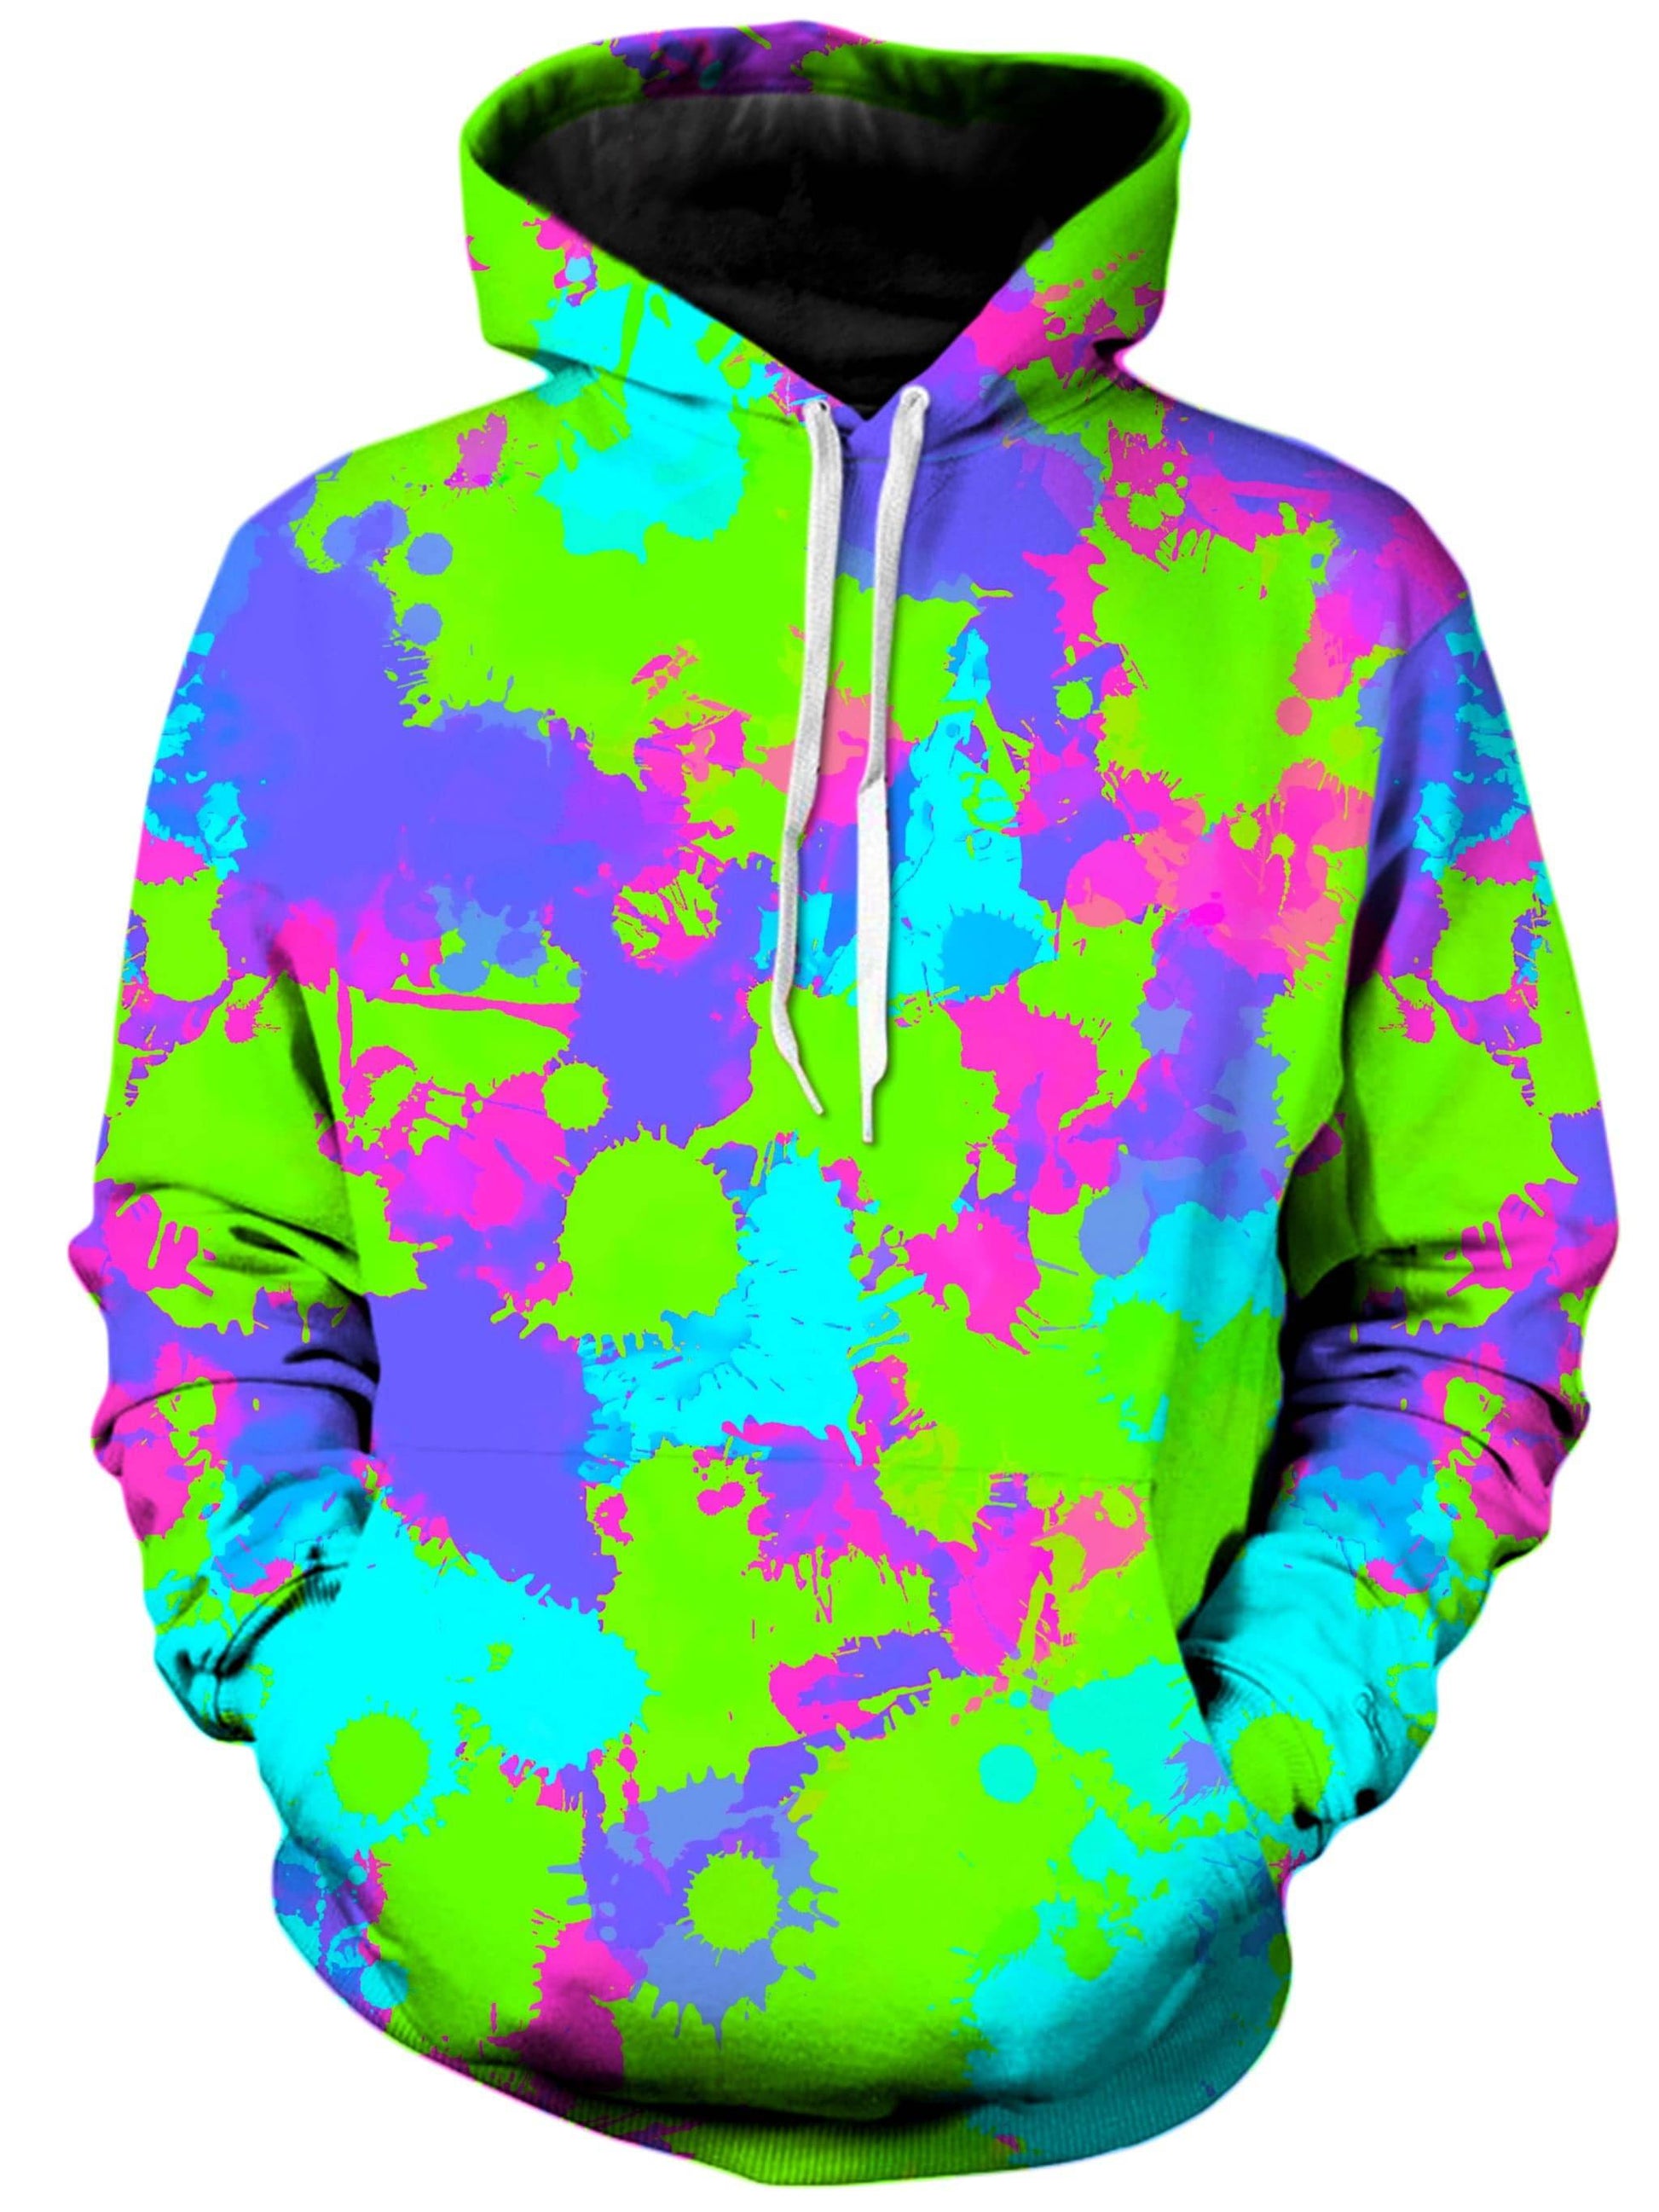 Splatter Sleeve Graphic Hoodie, Multi color